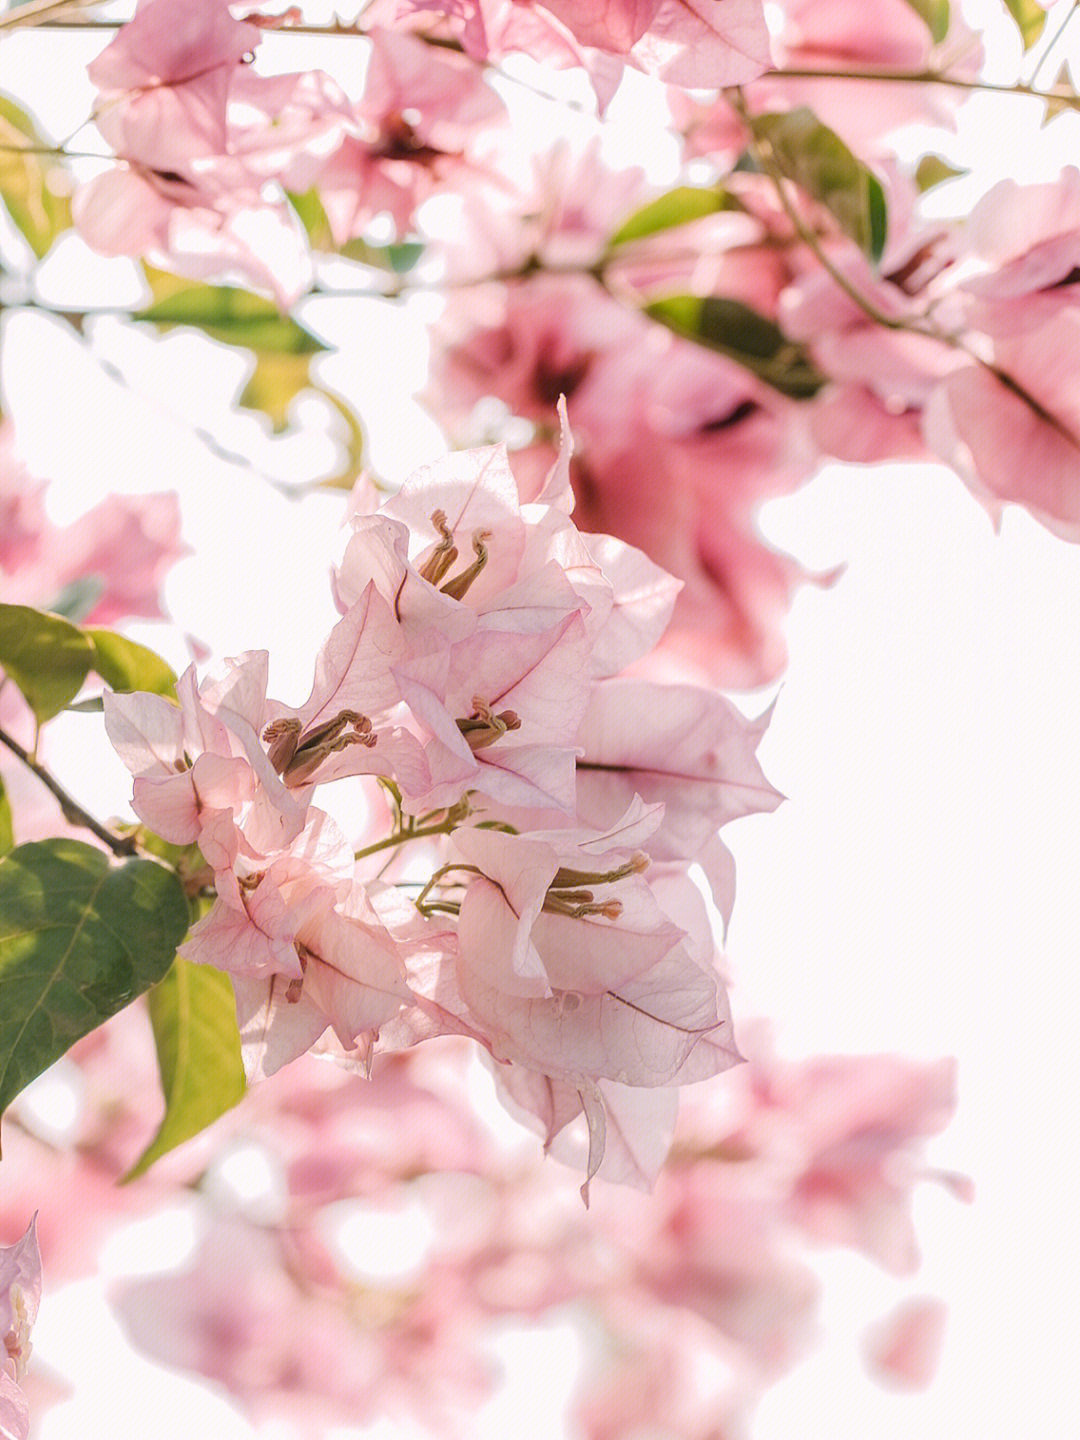 勒杜鹃的花萼图片